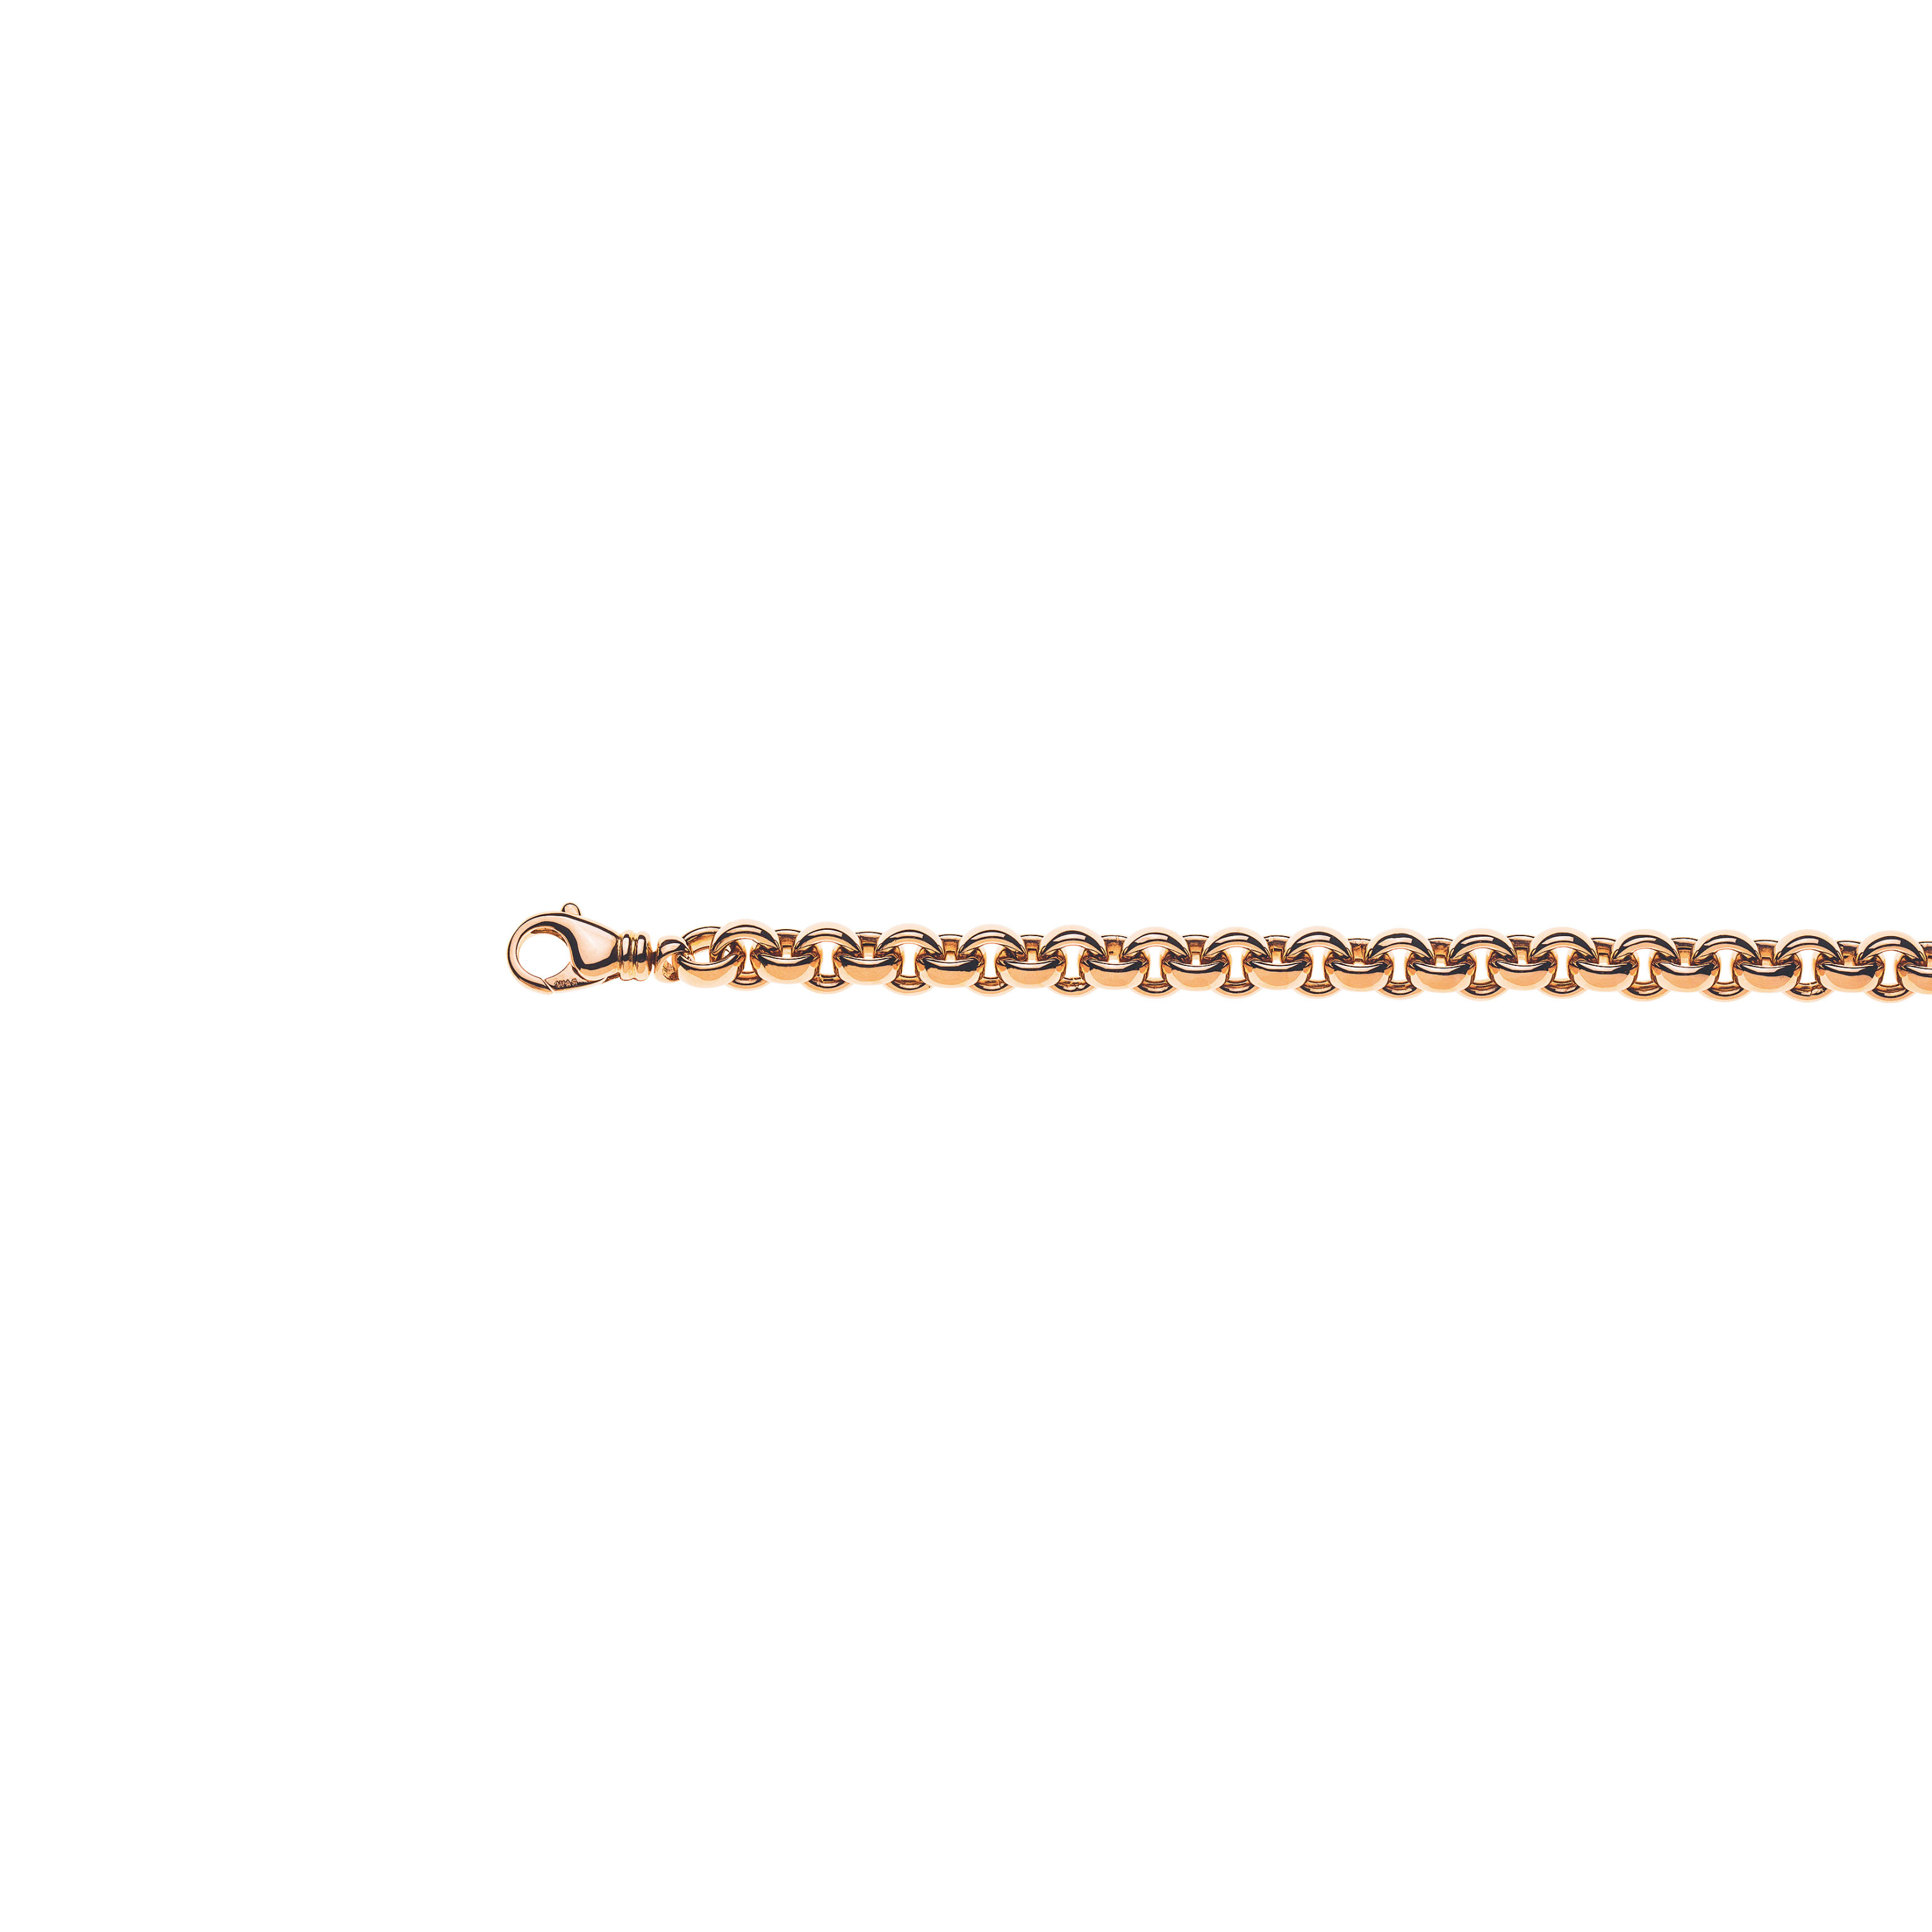 Rotgold 750 Collier, Handarbeit, 45cm Länge, 7.7mm Breite